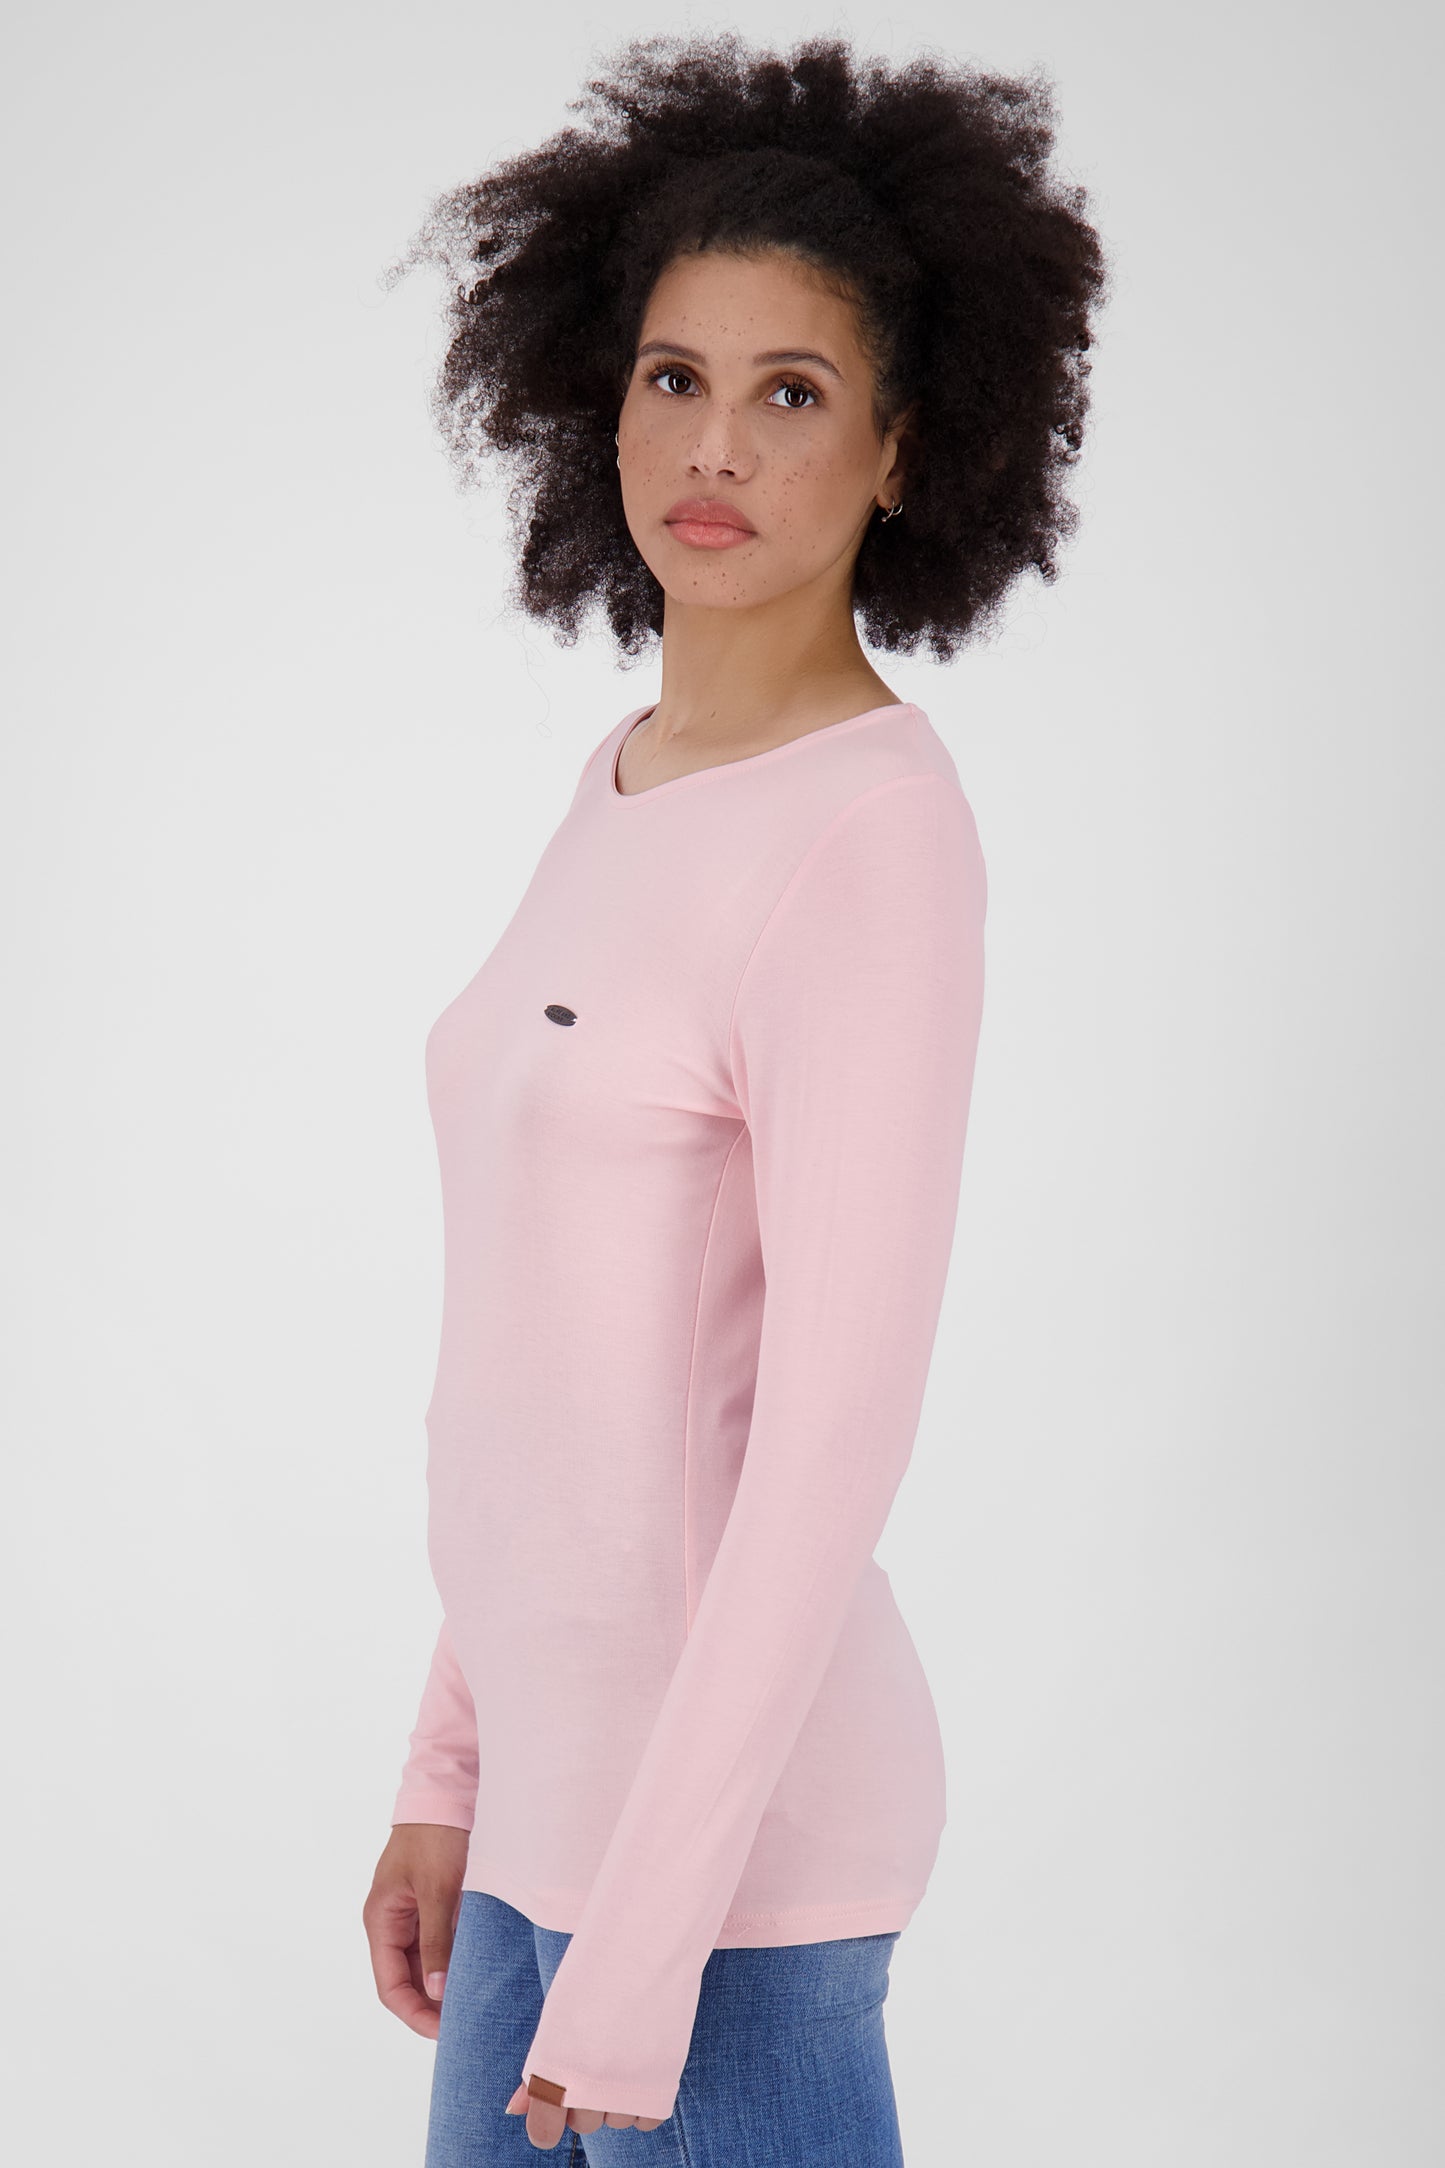 SinaAK Langarmshirt für Damen - Sportlicher Look für jede Gelegenheit Rosa